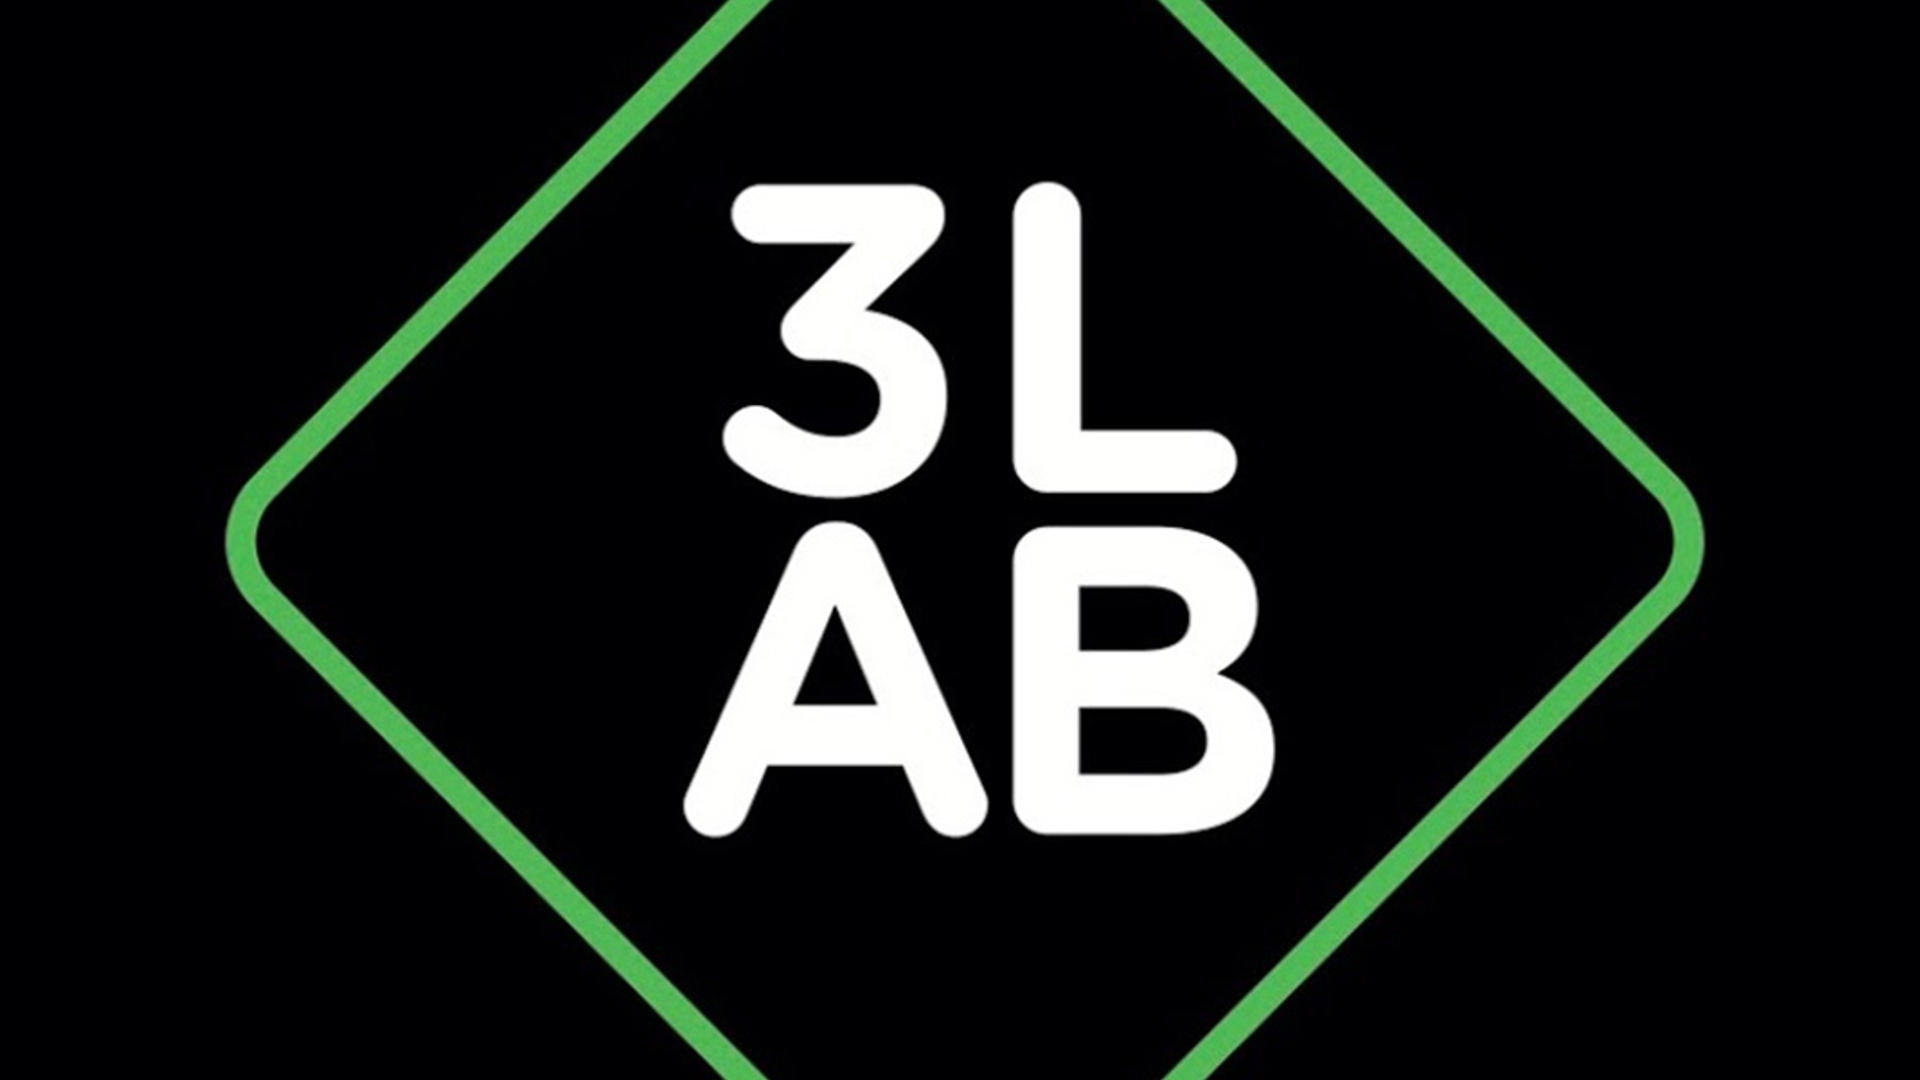 3lab